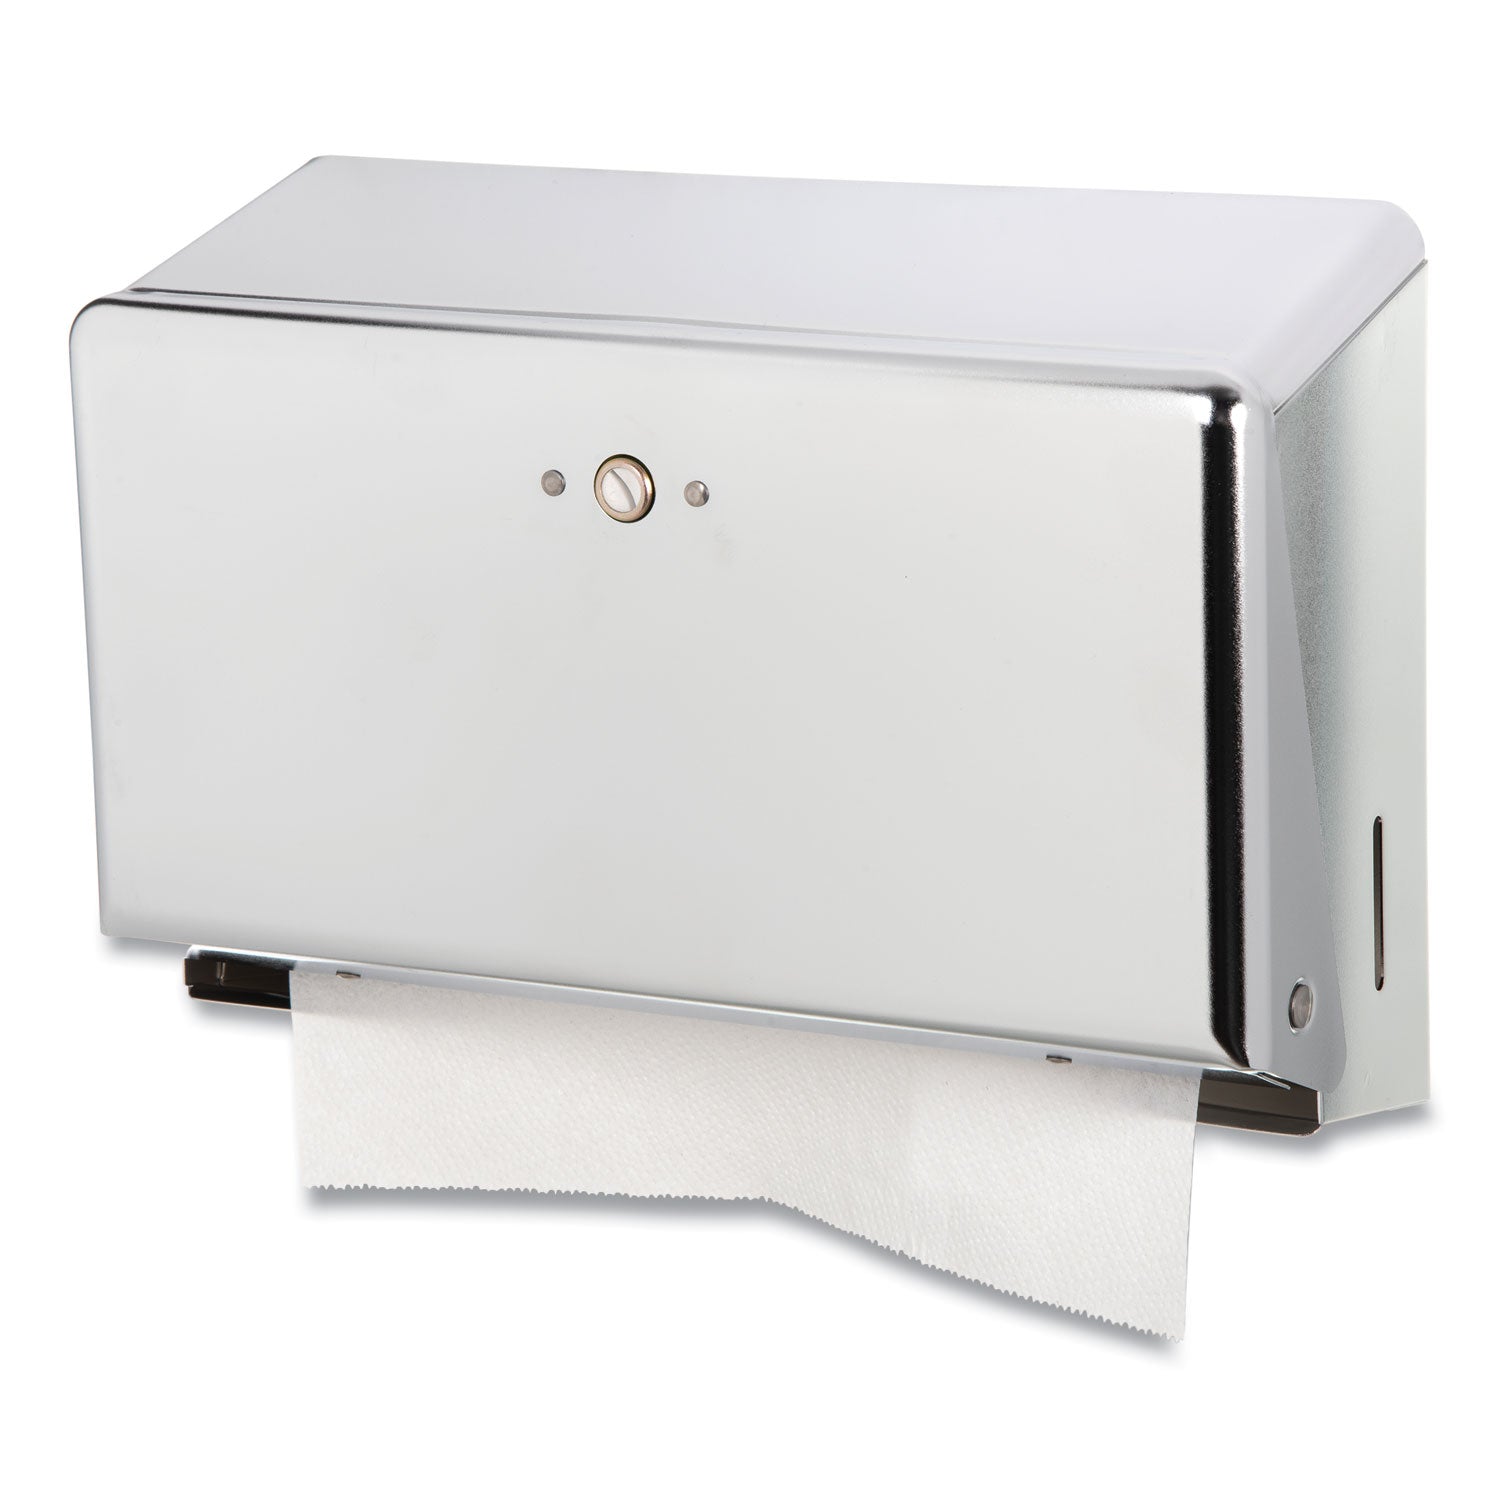 Mini C-Fold/Multifold Towel Dispenser, 11.13 x 3.88 x 7.88, Chrome - 